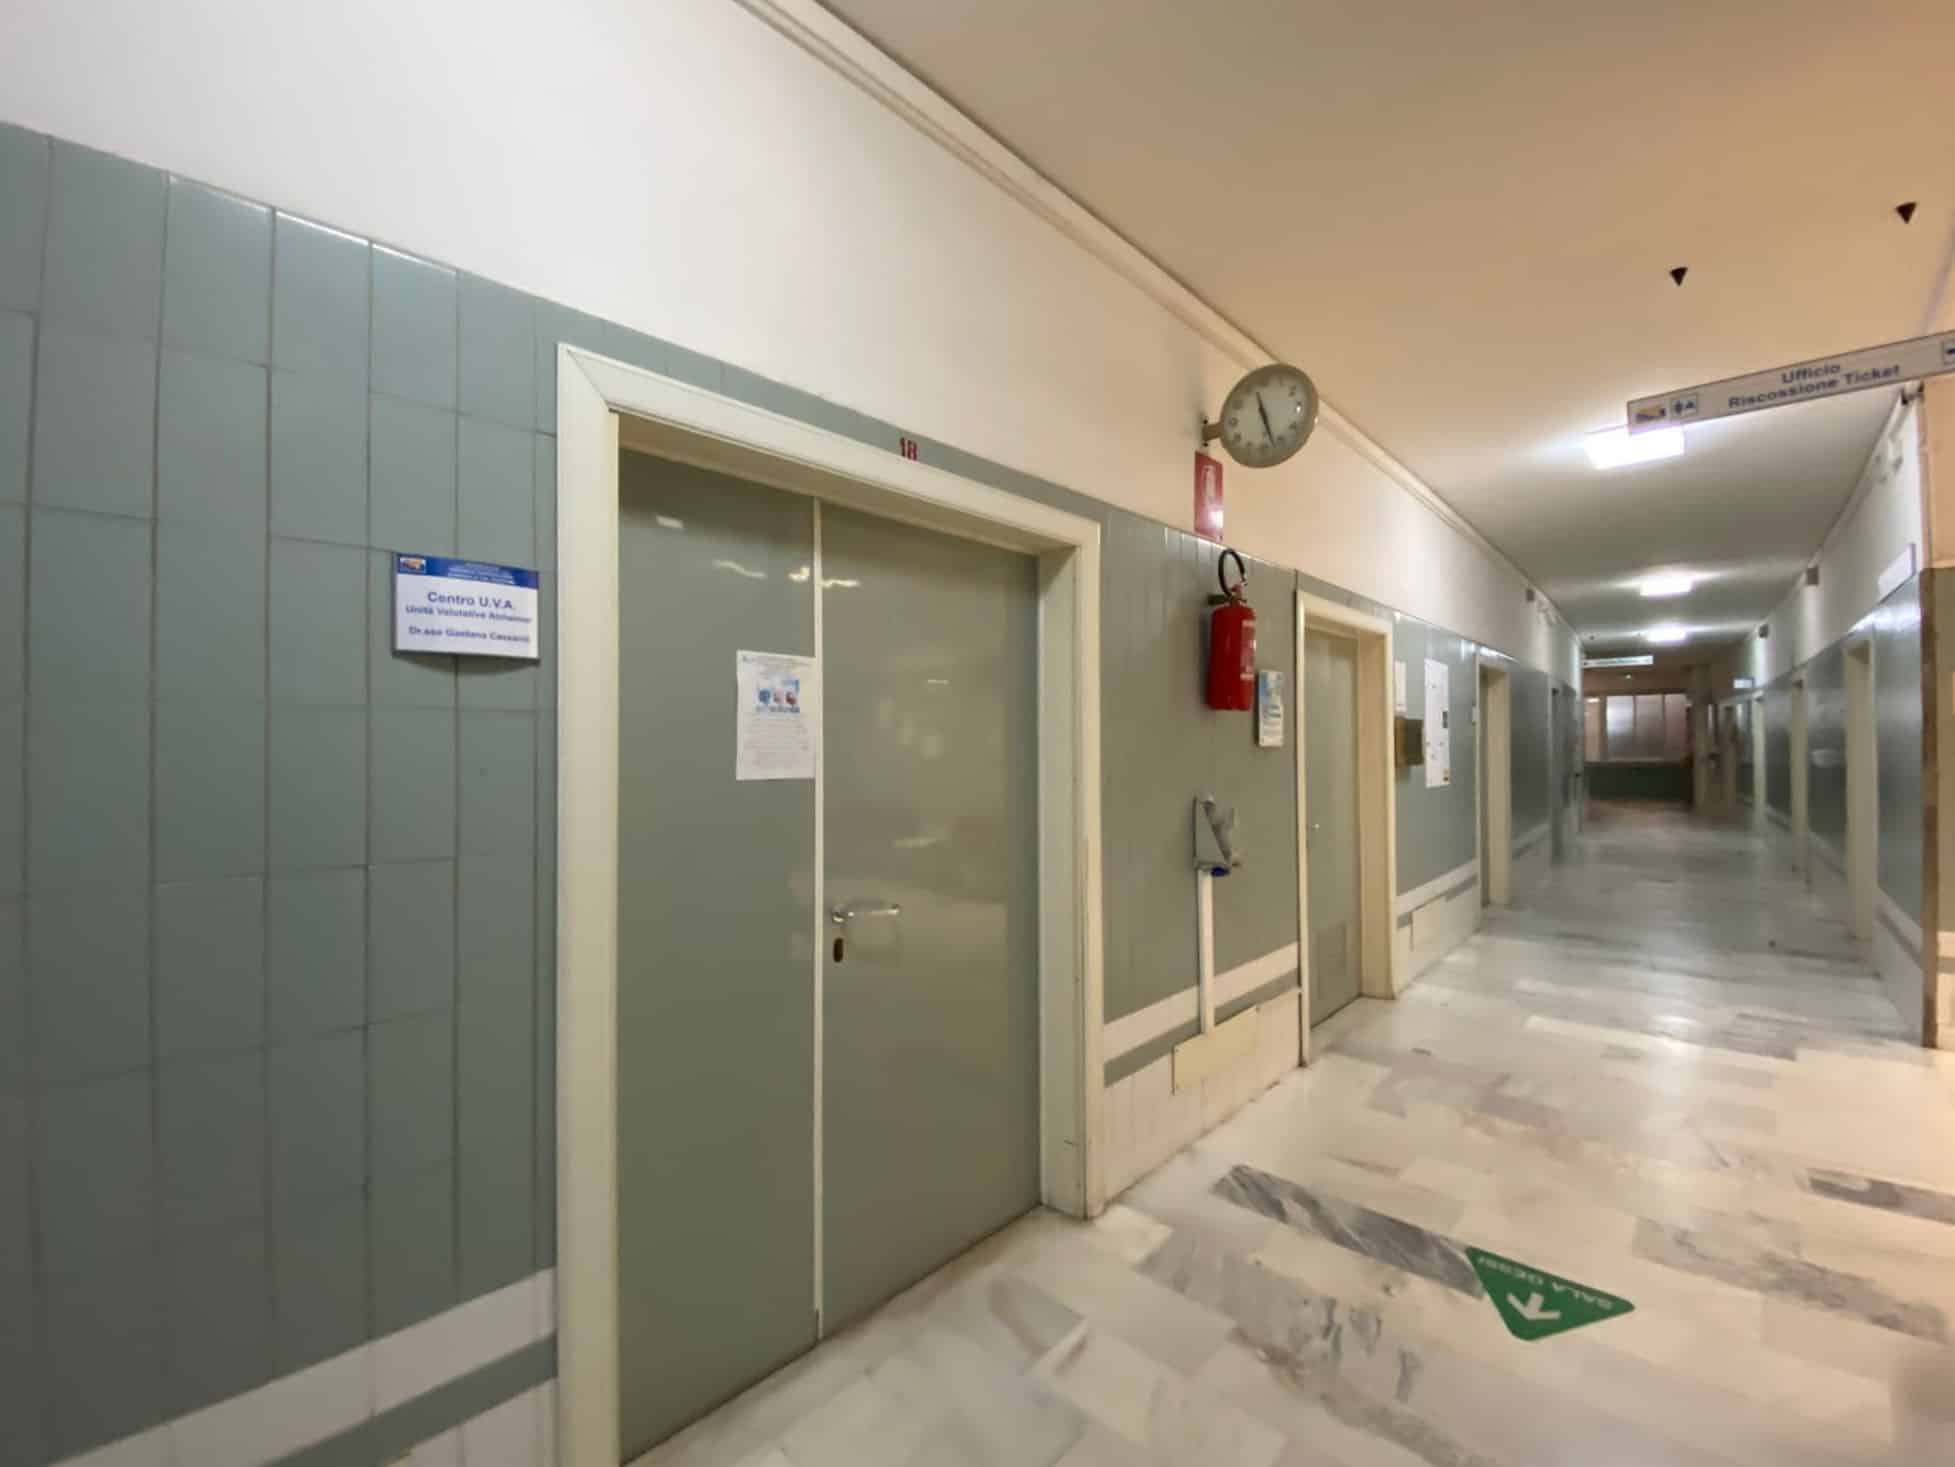 Nuovo ingresso per l’ospedale di Caltagirone, da lunedì 4 ottobre al via i lavori per 370mila euro